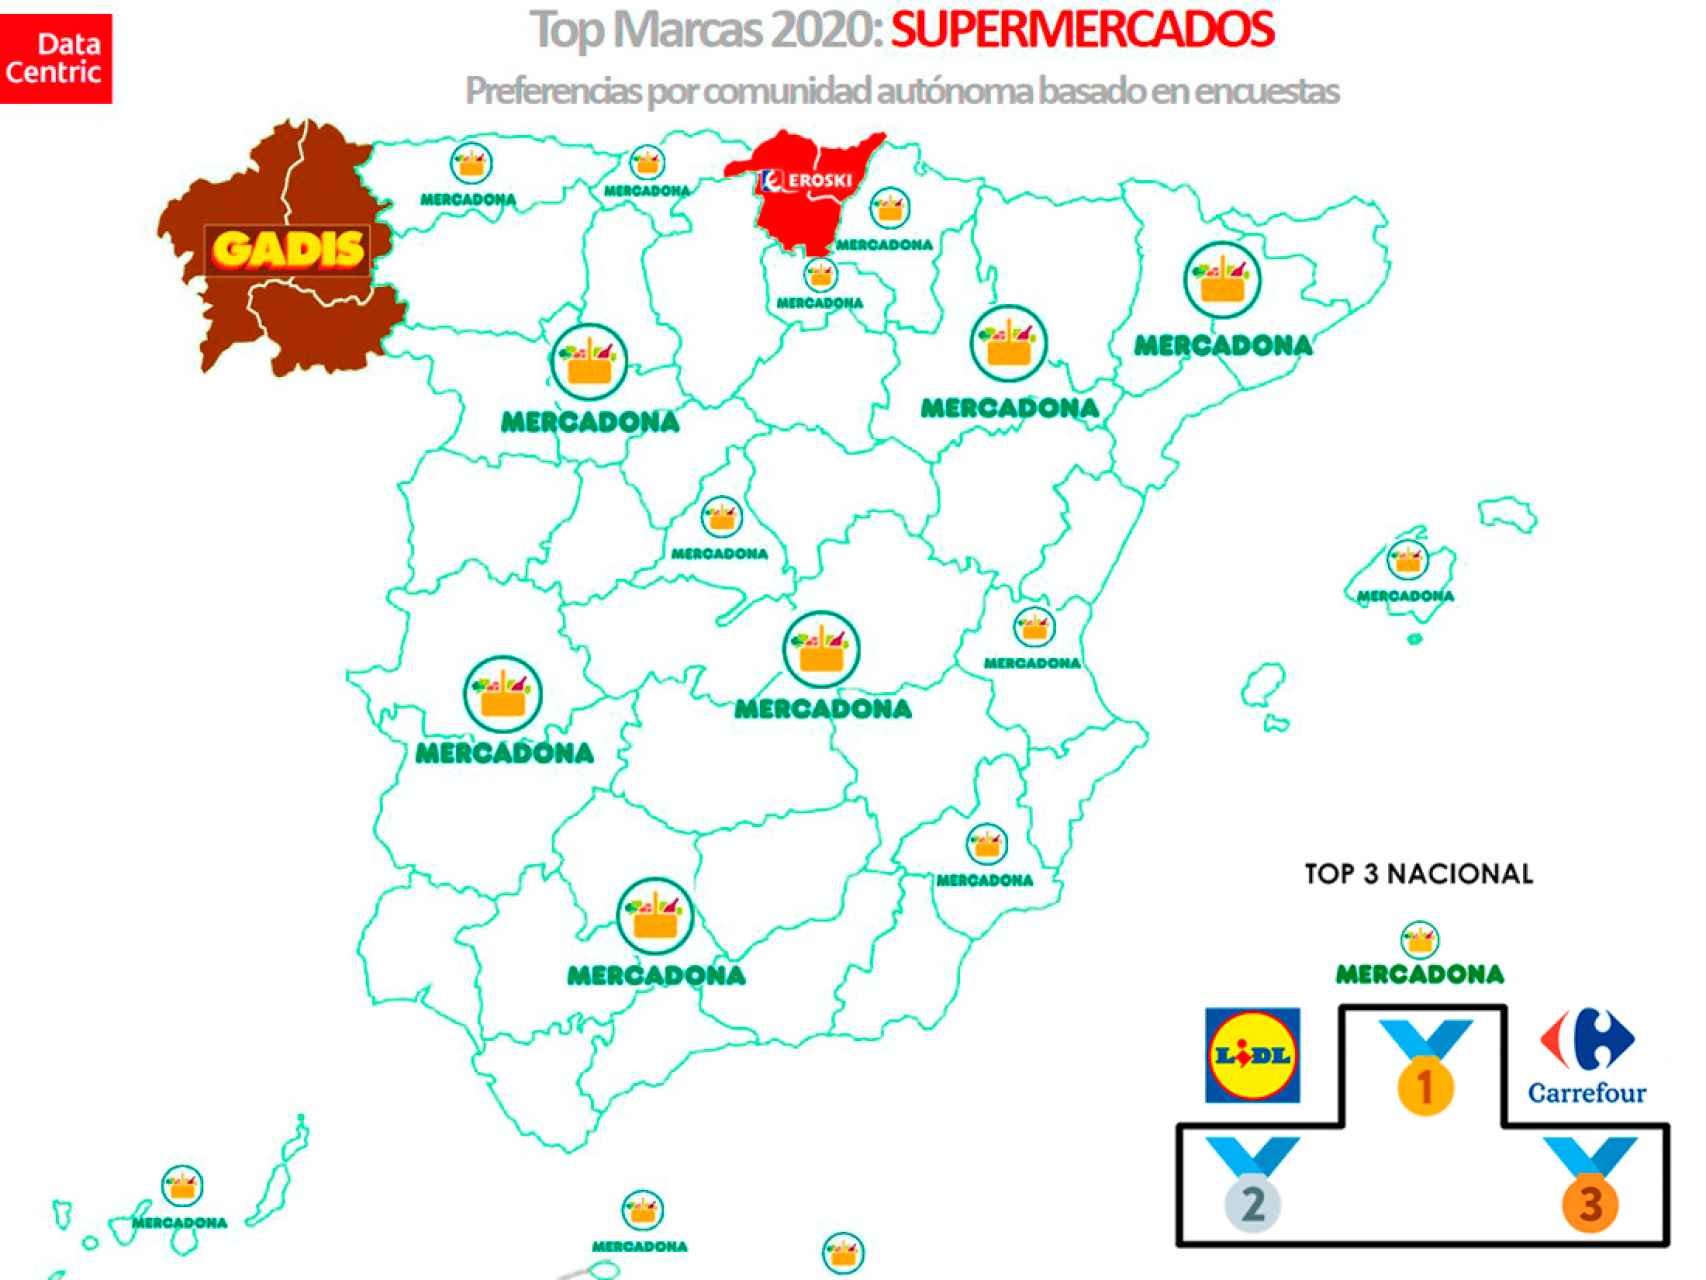 El mapa de las marcas favoritas de supermercados en España en 2020